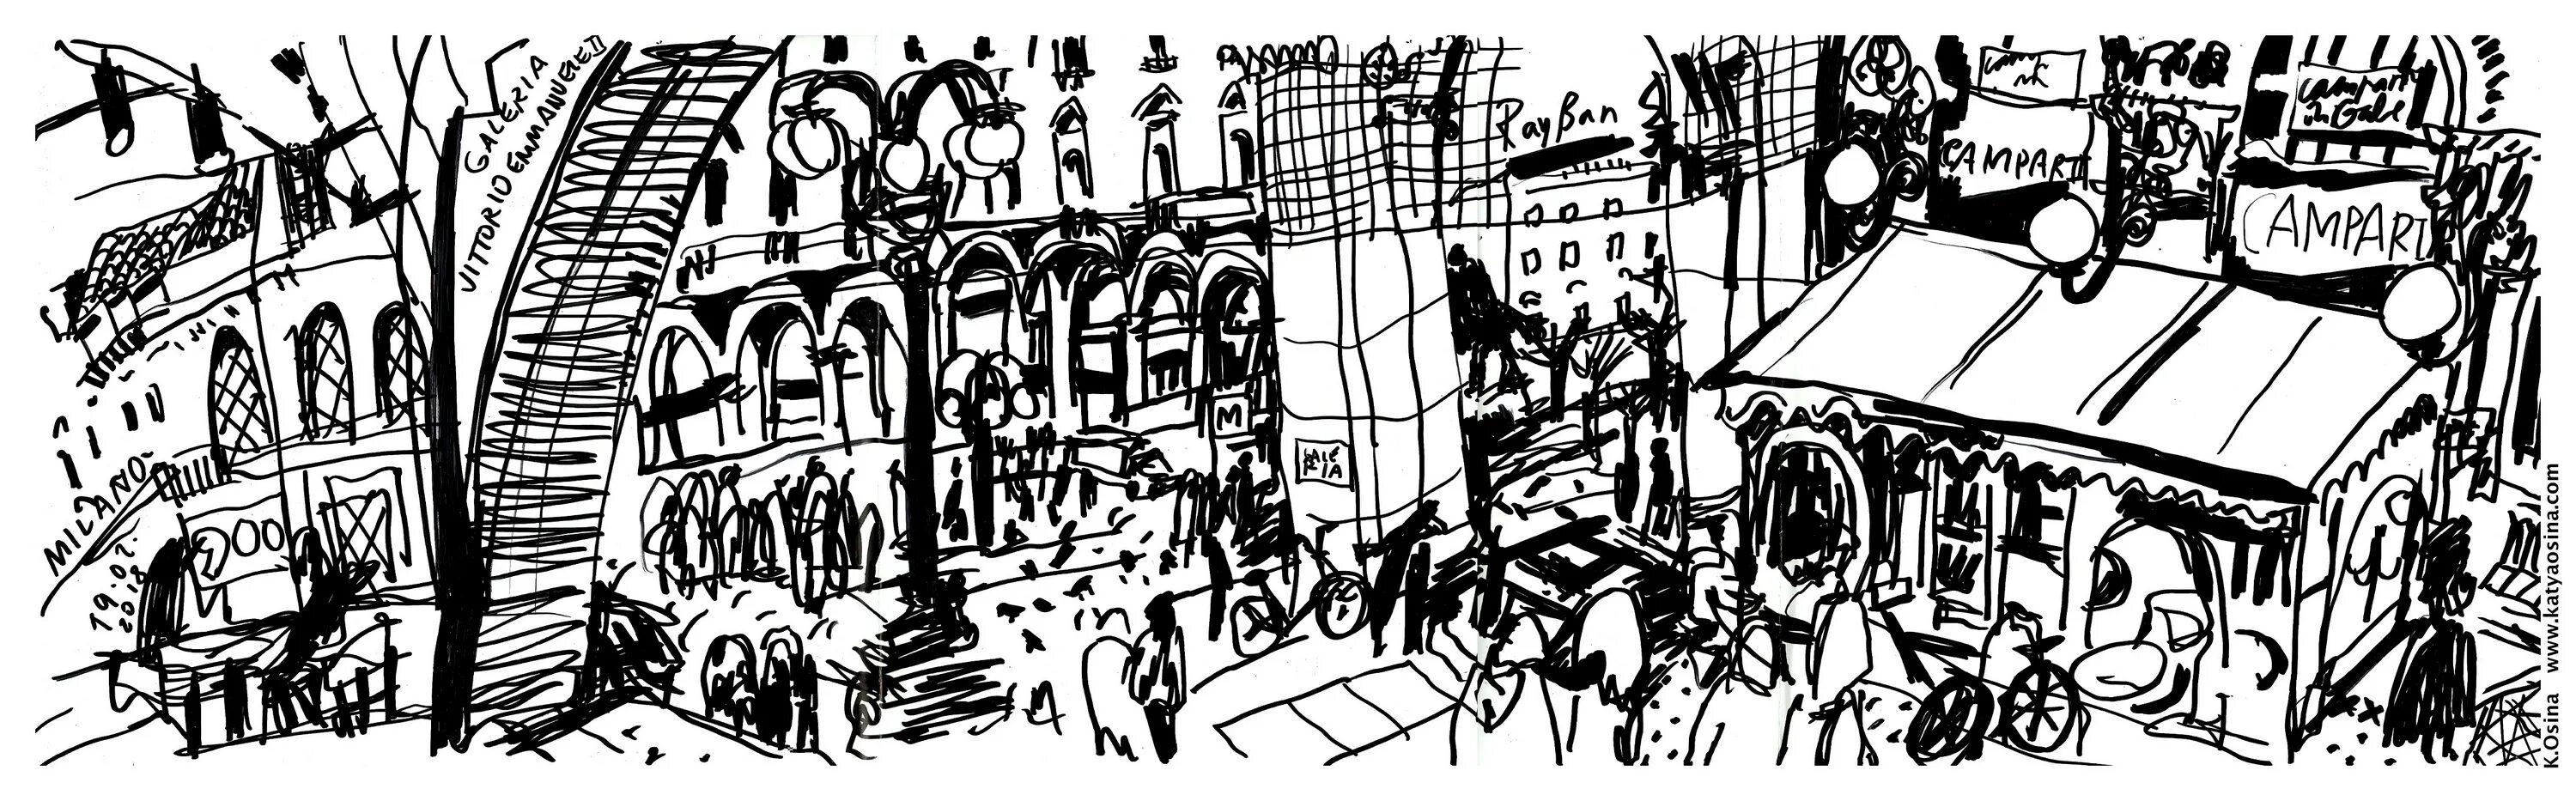 Рисунок путешествие во времени. Средневековый город ярмарка арт. Фон из иллюстраций. Улица Рима рисунок. Рисунок годы странствия.